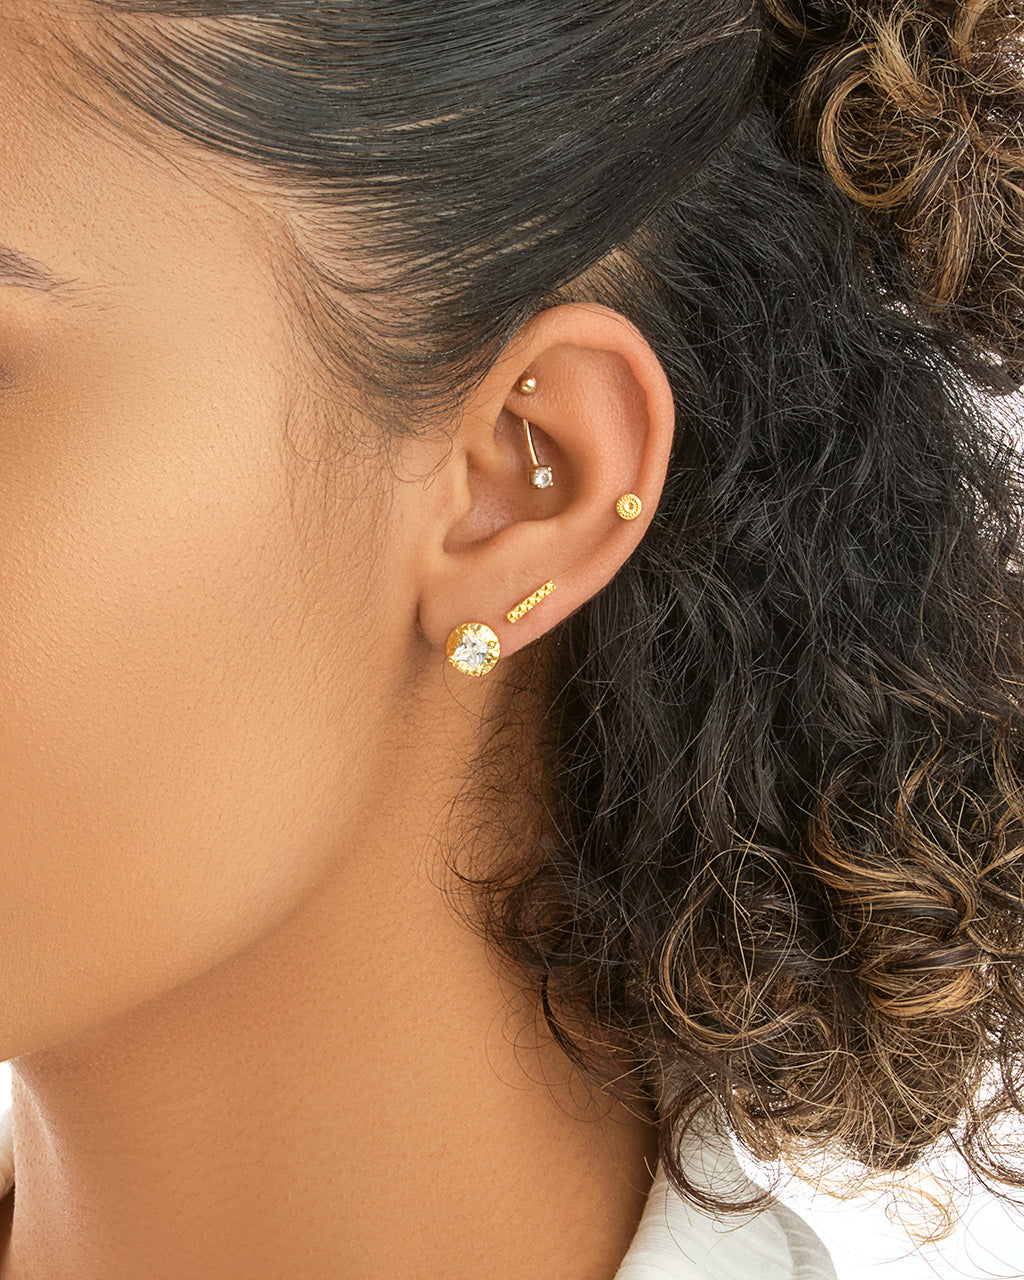 Azizi Stud Earring Set Earring Sterling Forever 